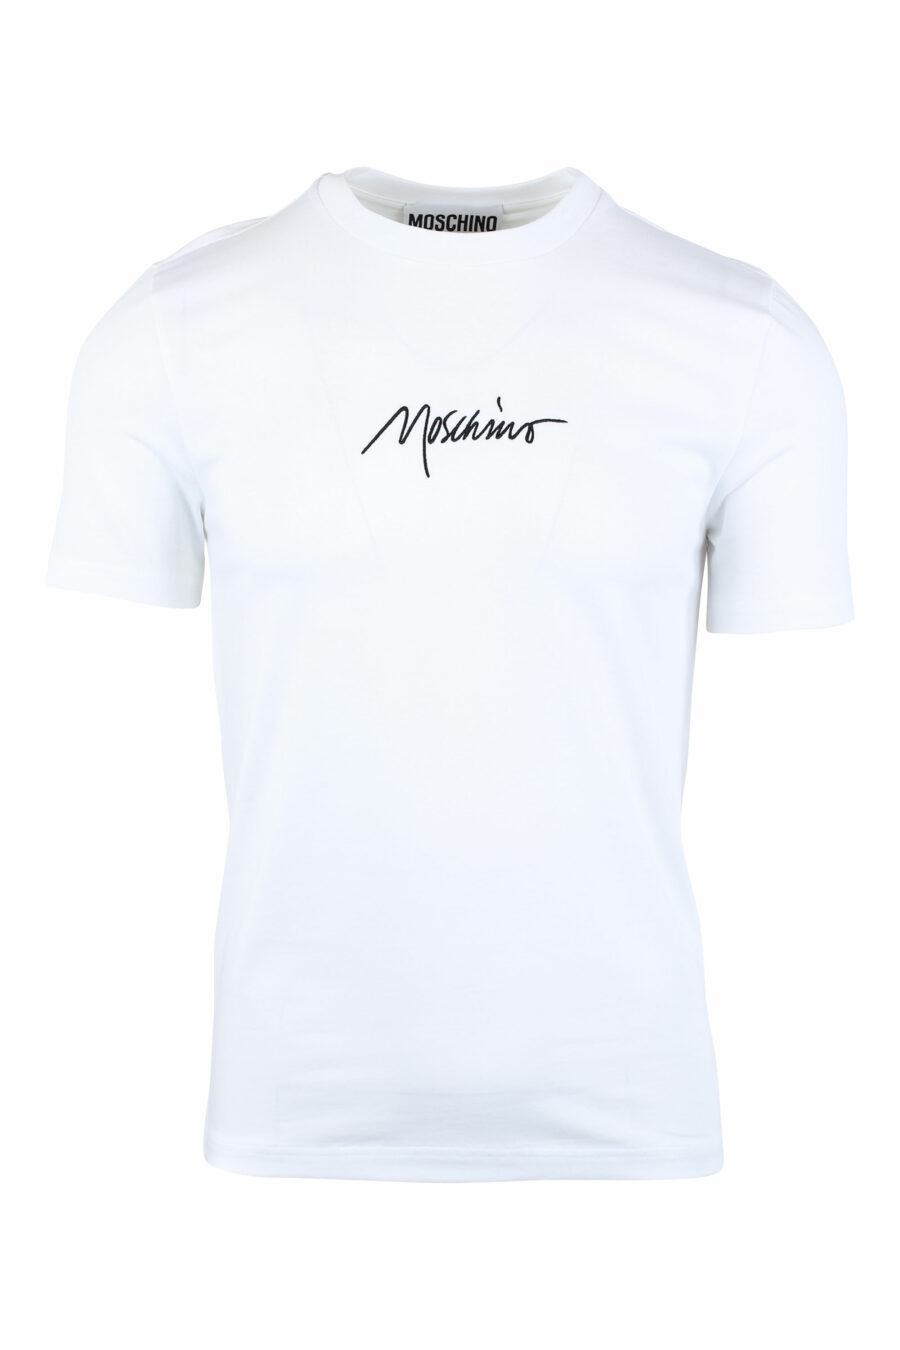 Camiseta blanca con logo "signature" - IMG 1356